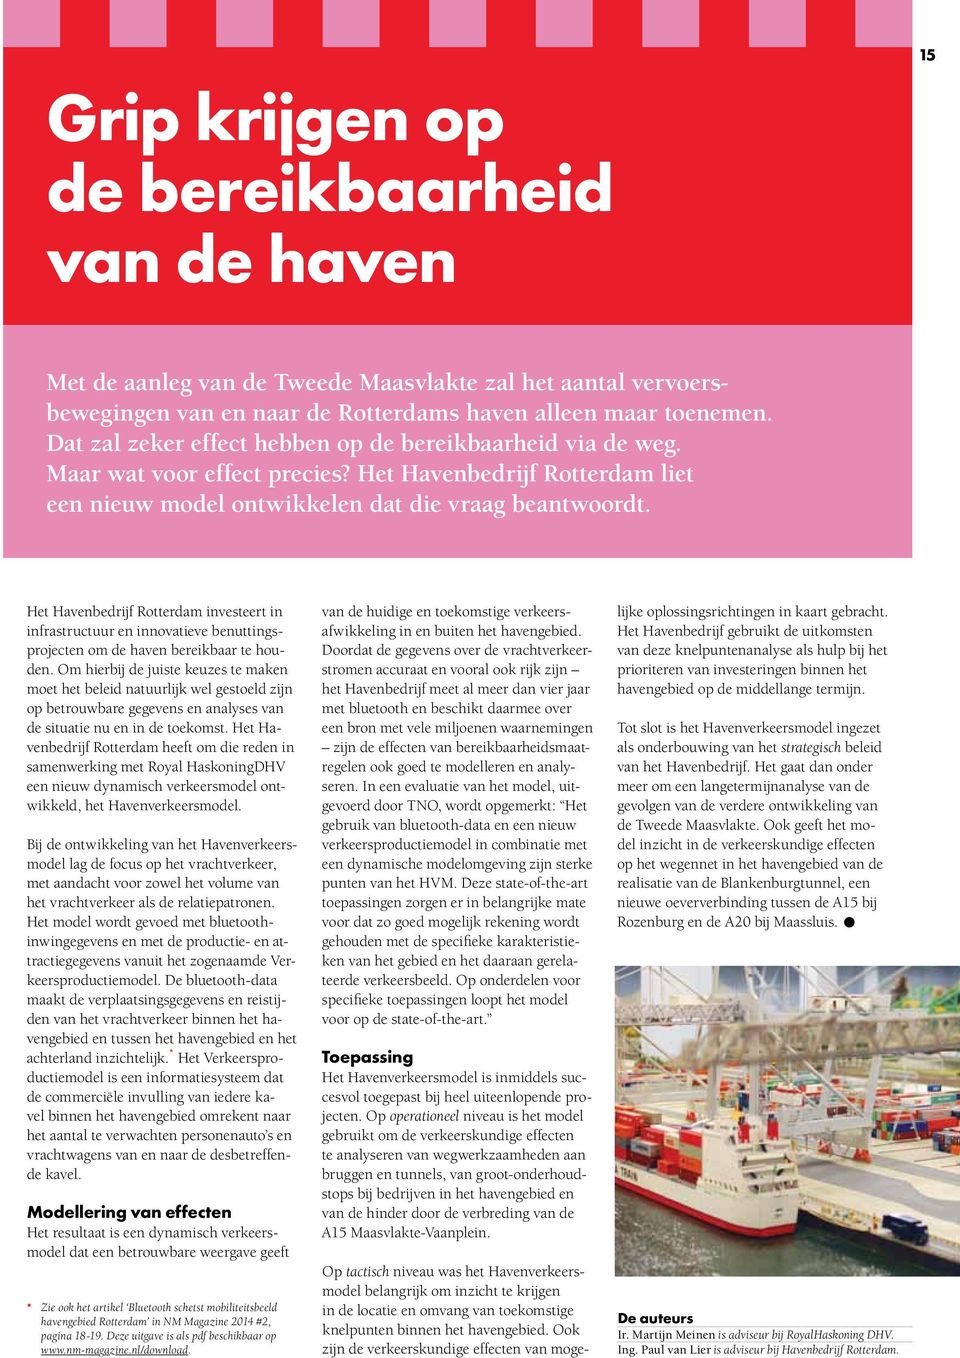 Het Havenbedrijf Rotterdam investeert in infrastructuur en innovatieve benuttingsprojecten om de haven bereikbaar te houden.